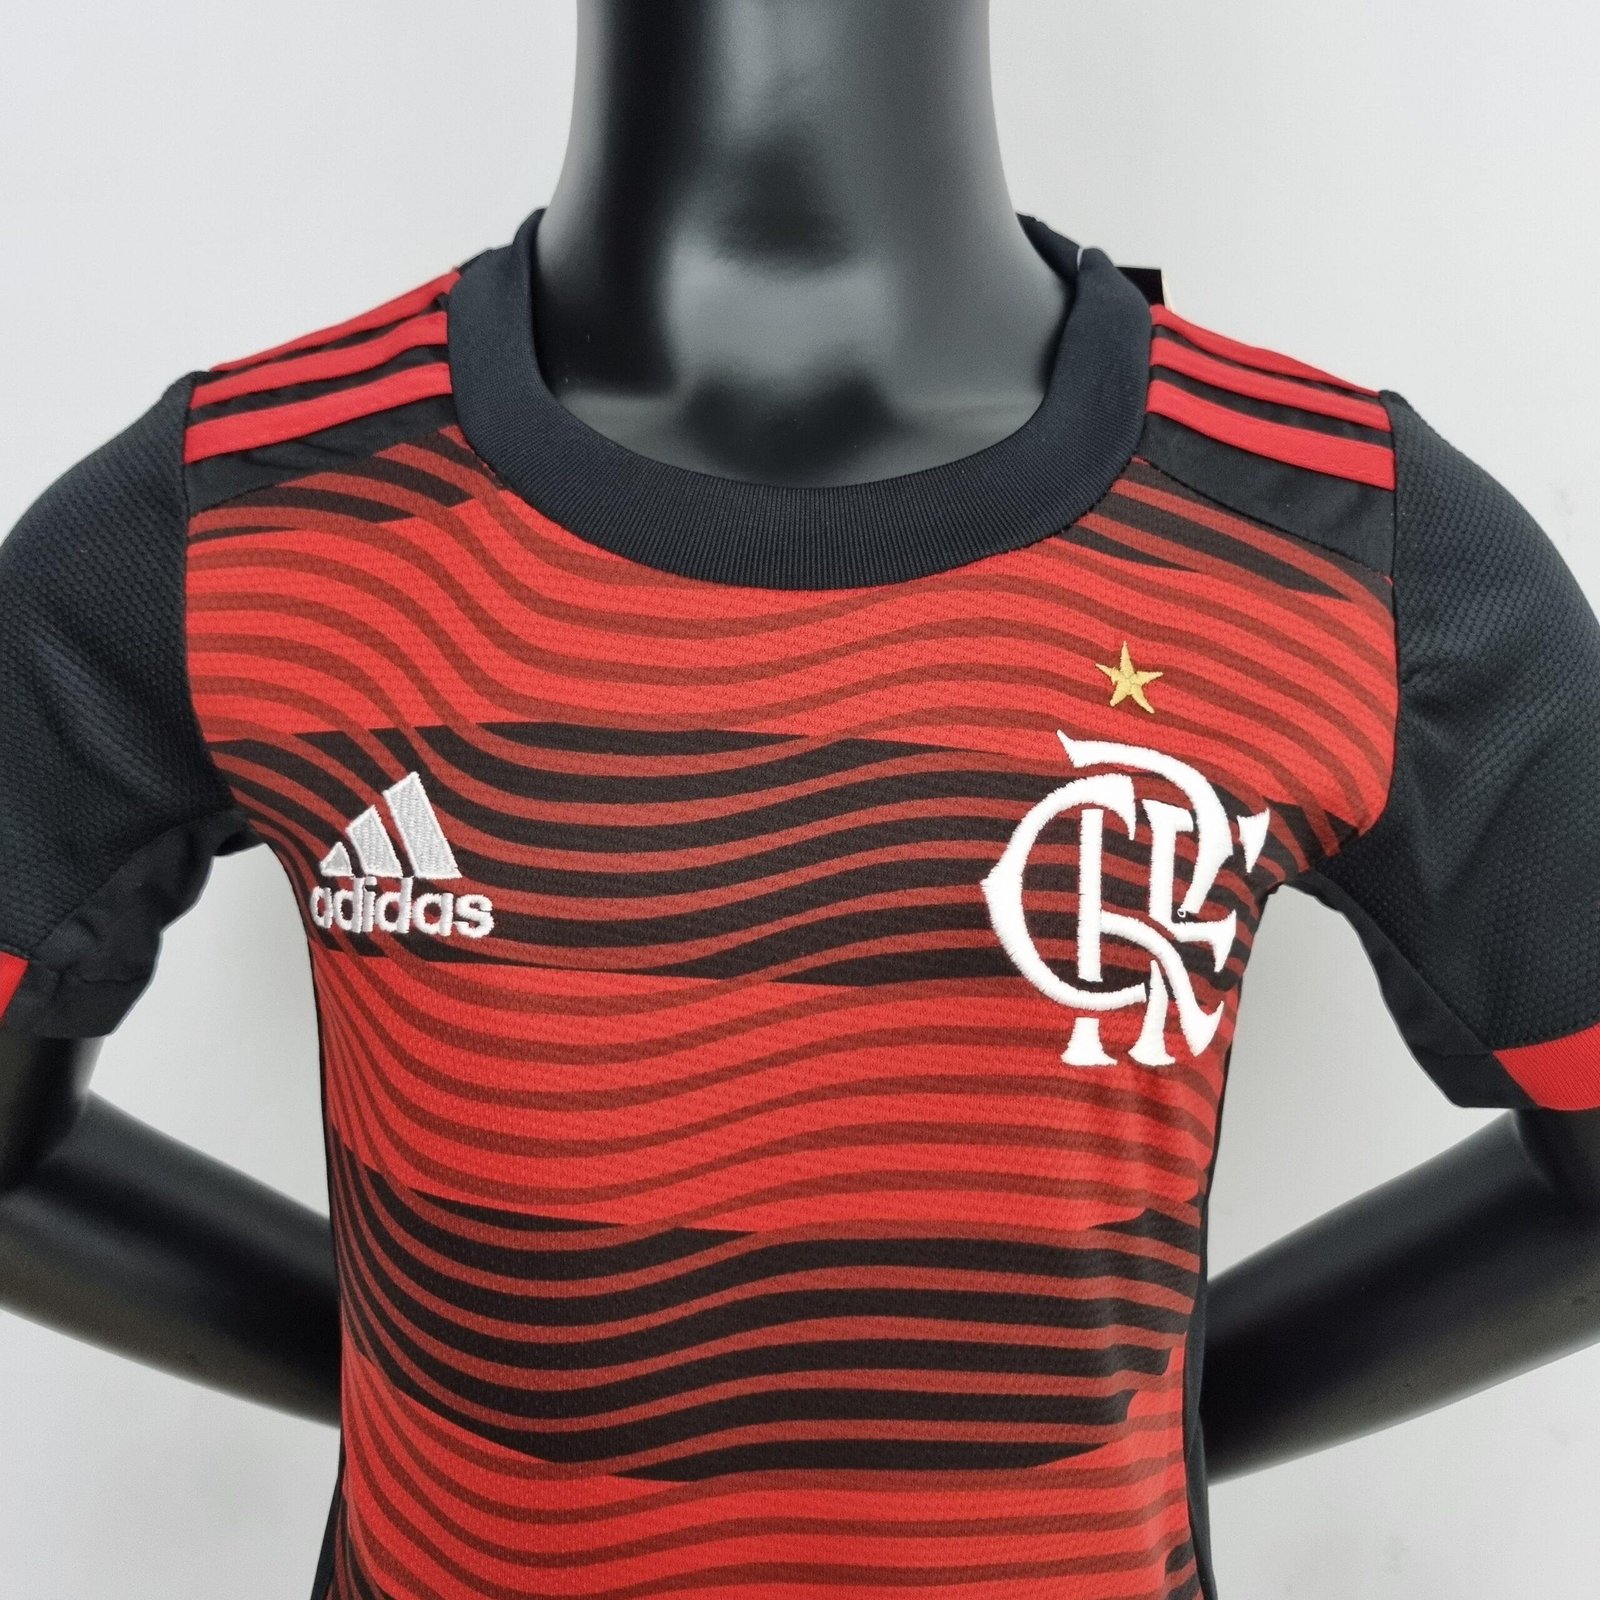 Camisas e fornecedoras da Primeira Liga 2020-2021 (Campeonato Português) »  Mantos do Futebol